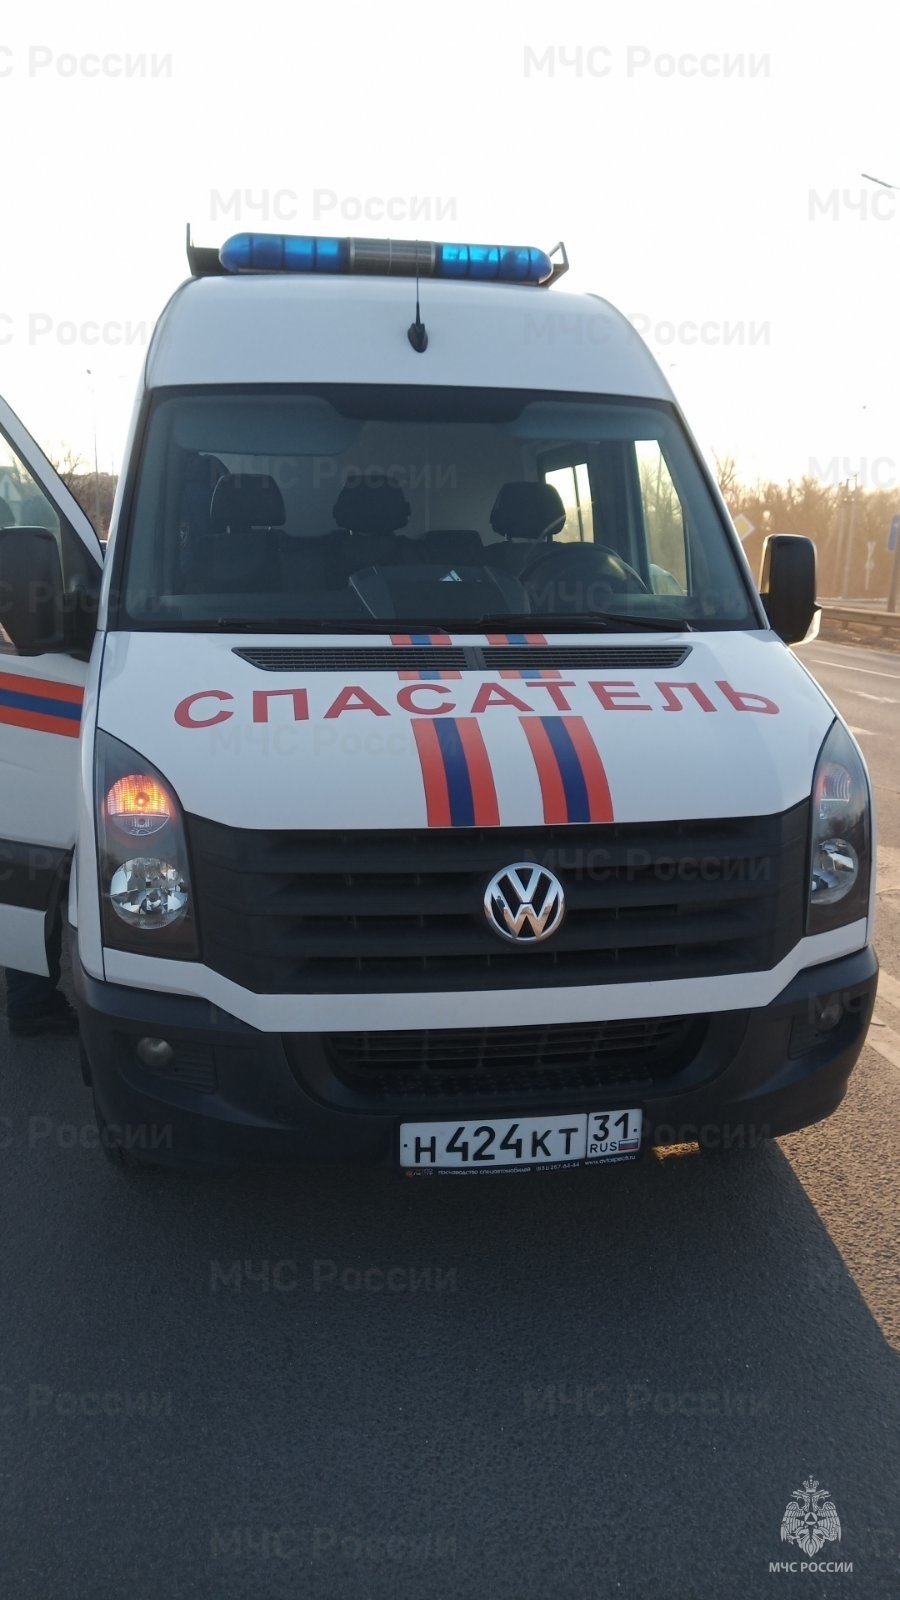 Спасатели МЧС России приняли участие в ликвидации ДТП в поселке Северный Белгородского района